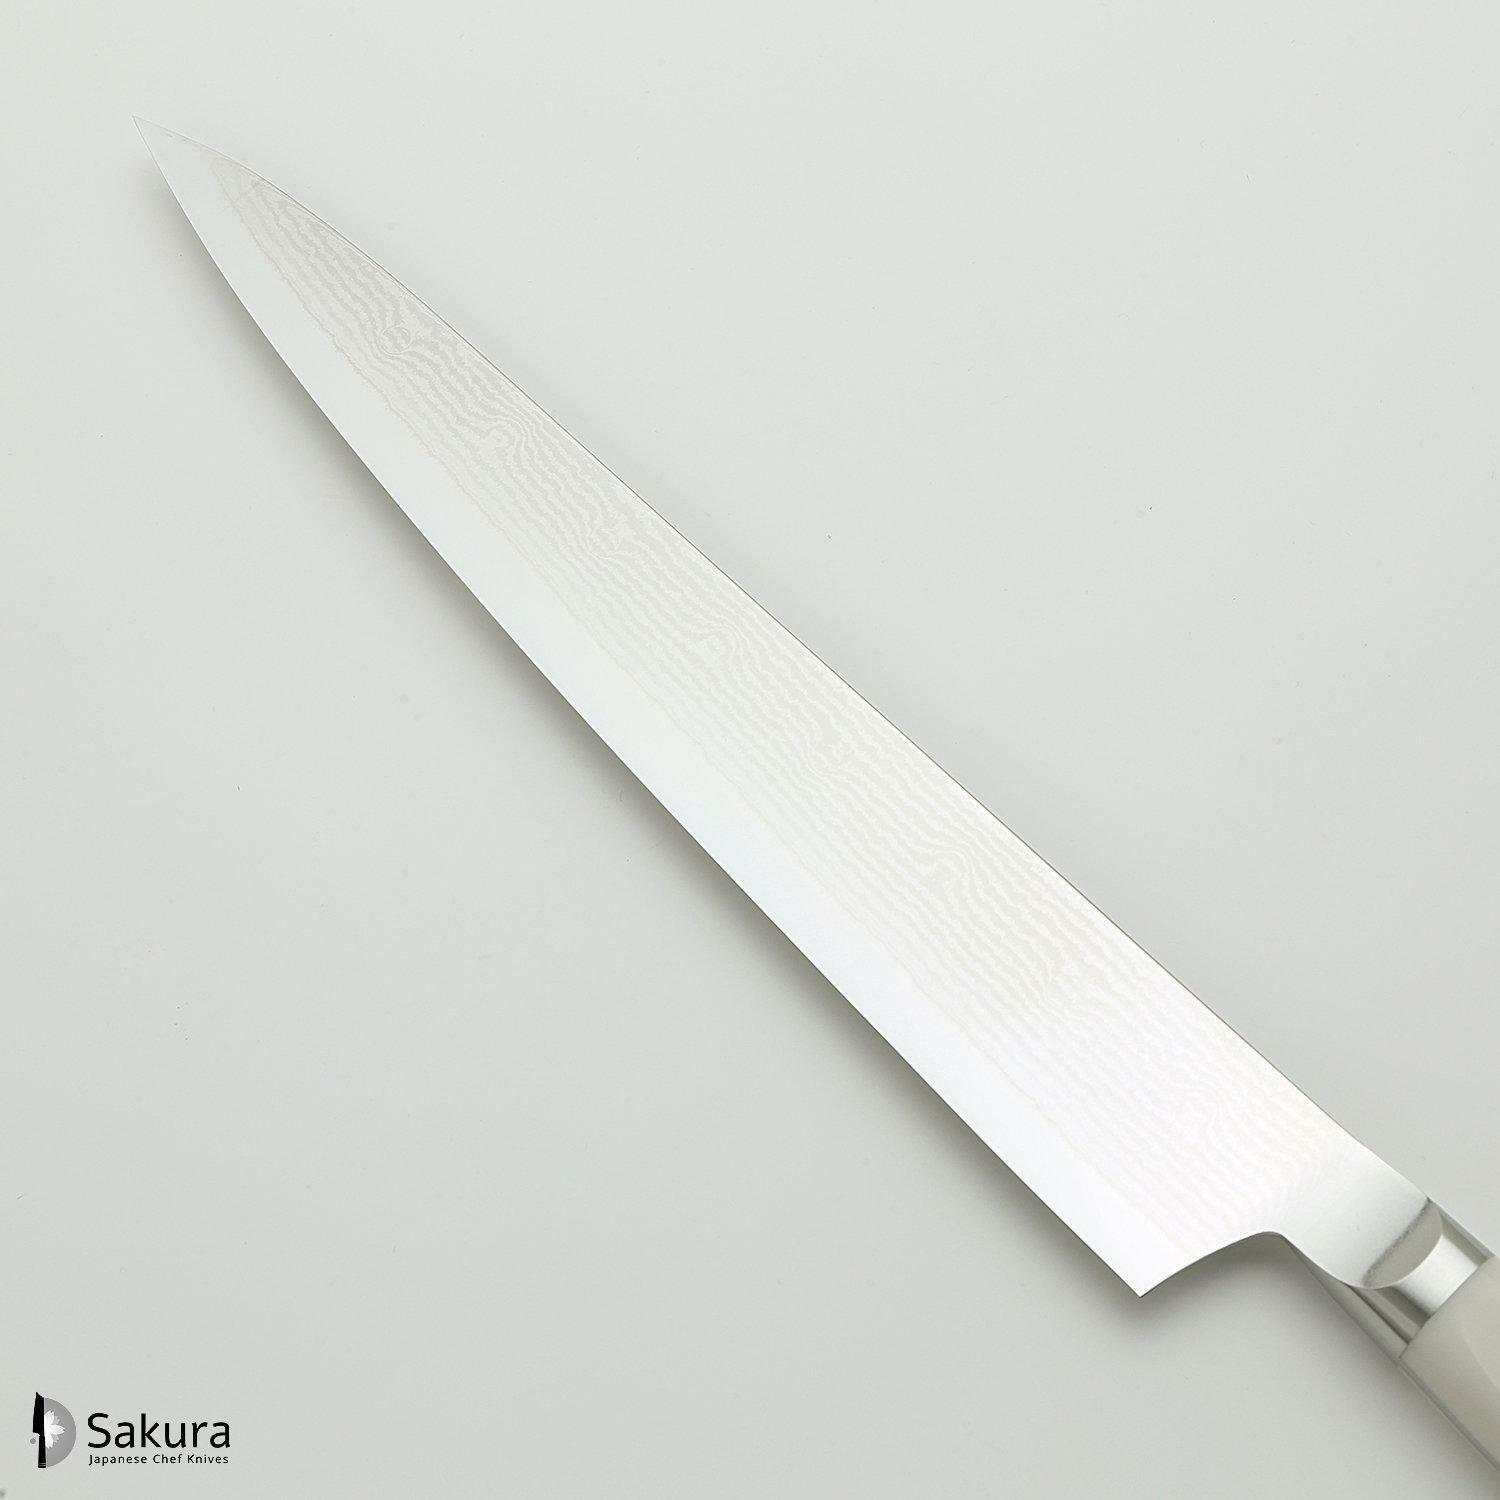 סכין חיתוך ופריסת בשר סוּגִּ’יהִיקִי 270מ״מ מחושלת בעבודת יד 33 שכבות: פלדת פחמן יפנית VG-10 עטופה 32 שכבות פלדת דמשק אל-חלד גימור דמשק 33 שכבות מקוסטה זאנמאיי יפן HKC-3011D